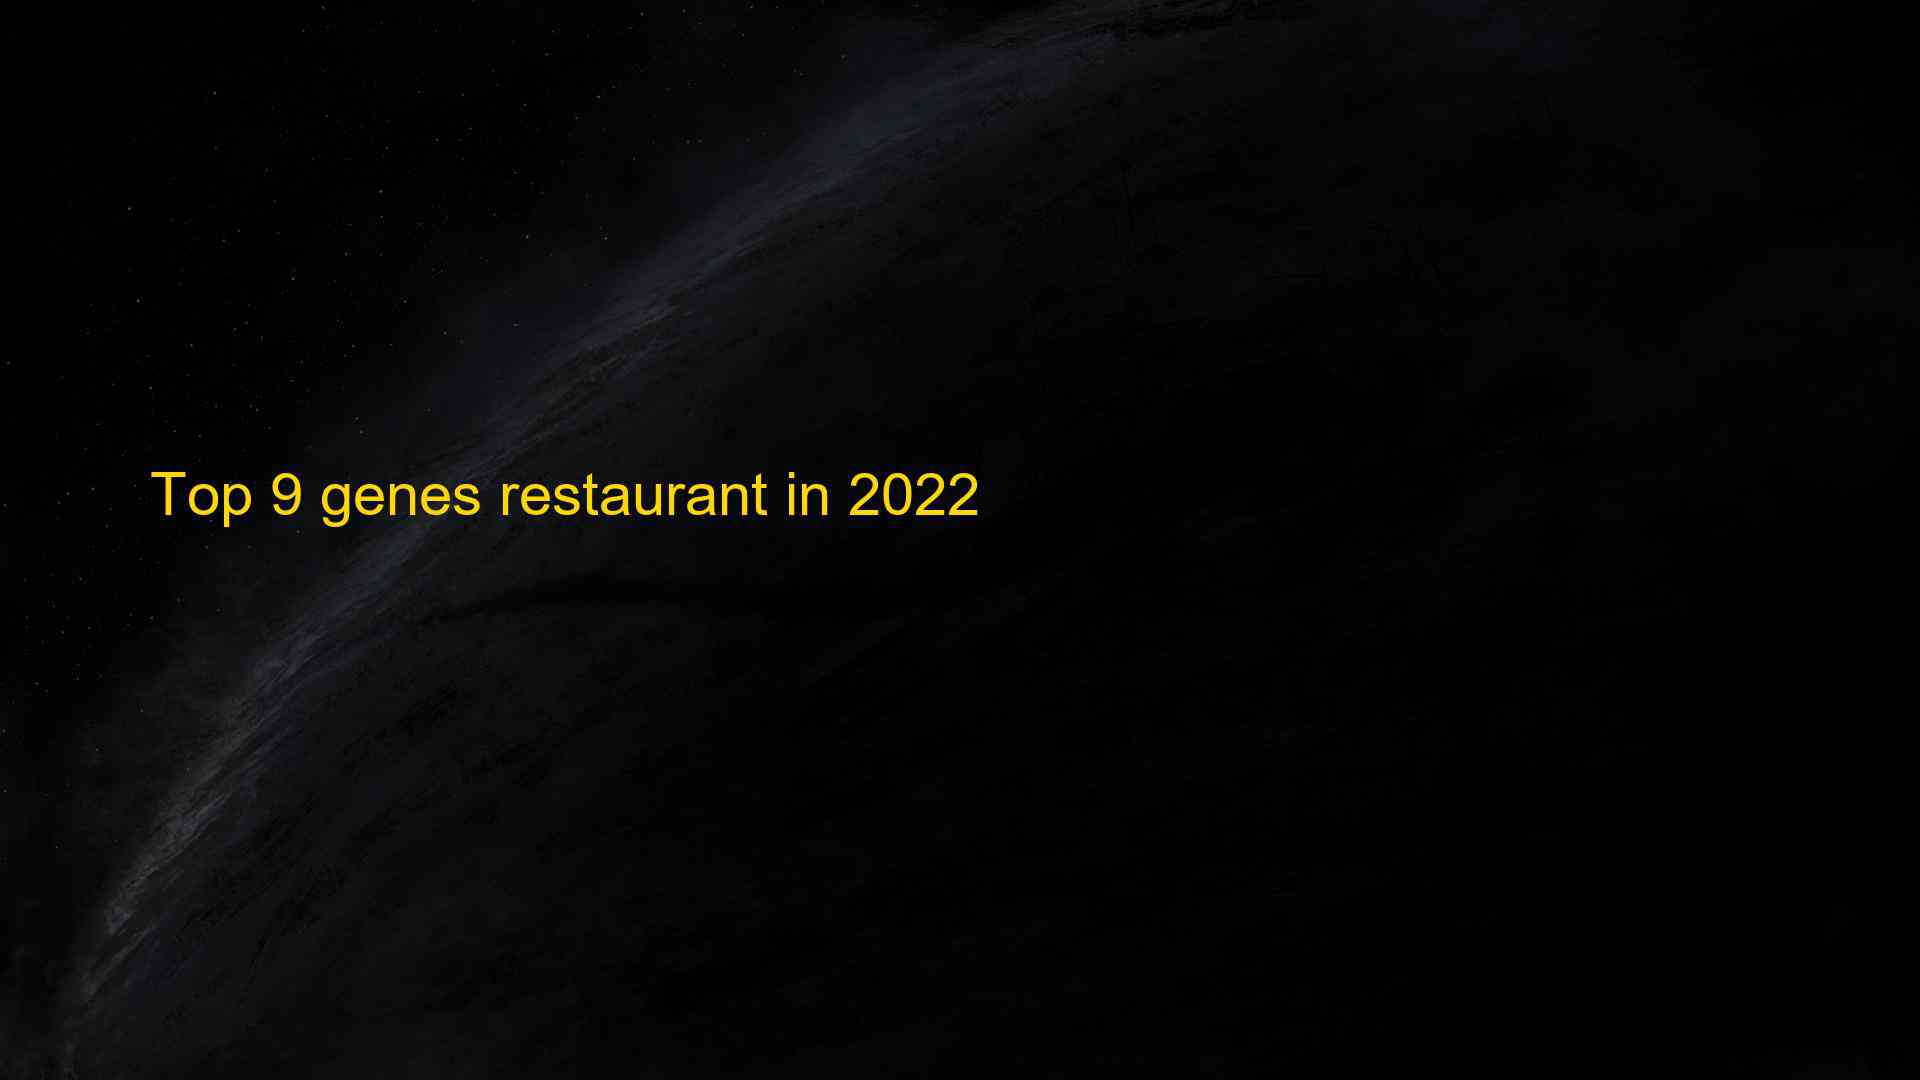 Top 9 genes restaurant in 2022 1662967897